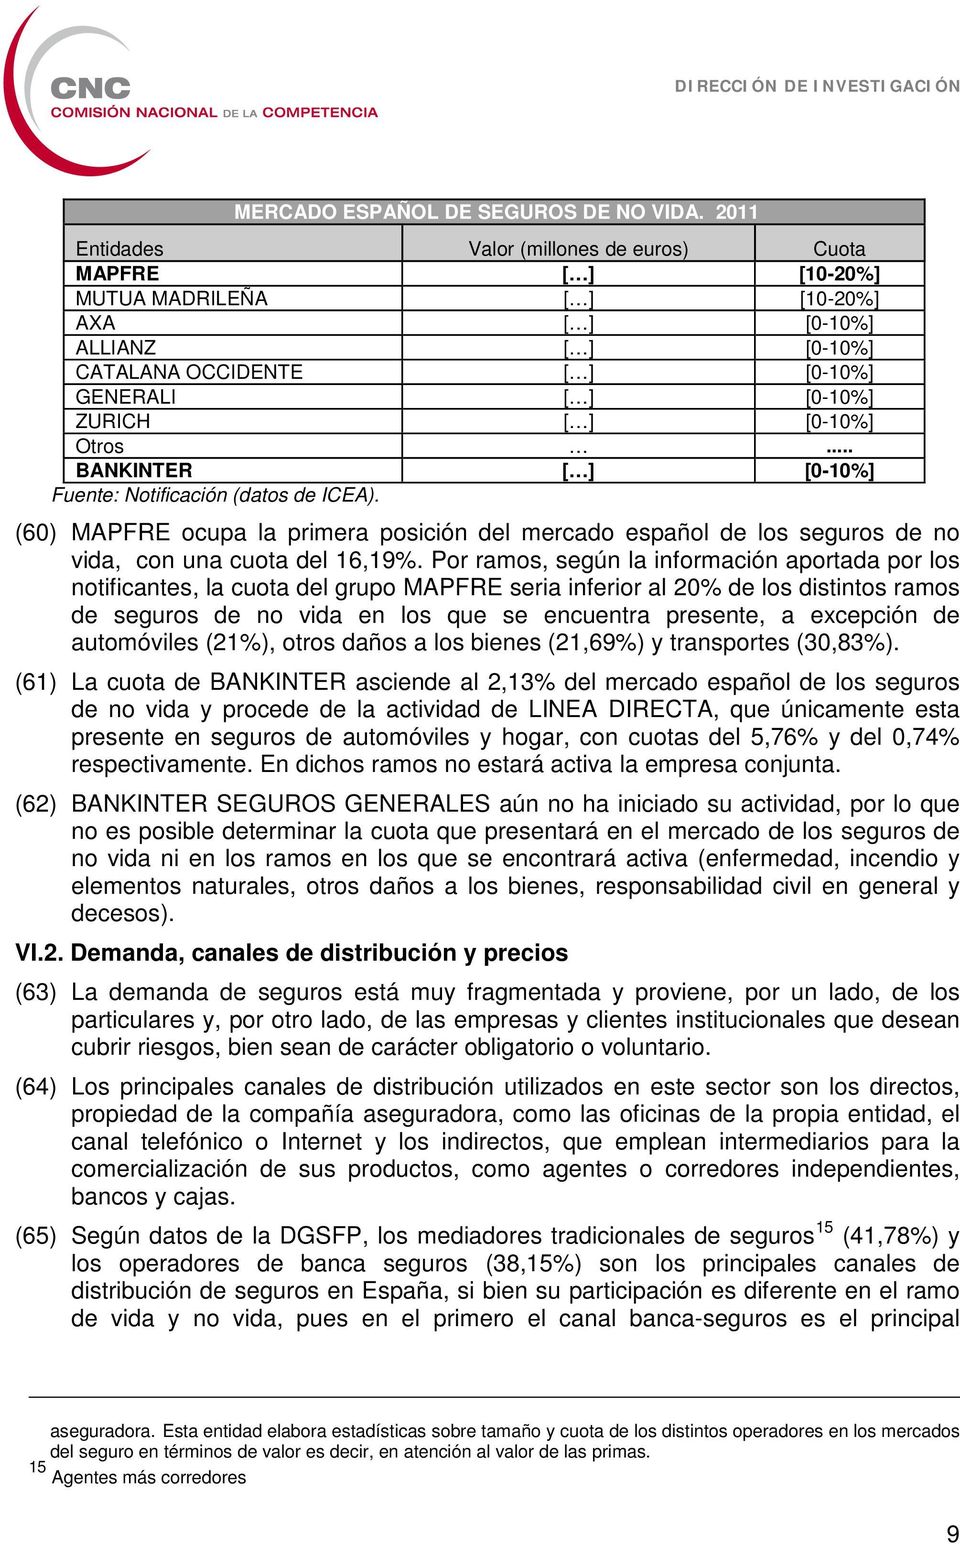 [0-10%] Otros... BANKINTER [ ] [0-10%] Fuente: Notificación (datos de ICEA). (60) MAPFRE ocupa la primera posición del mercado español de los seguros de no vida, con una cuota del 16,19%.